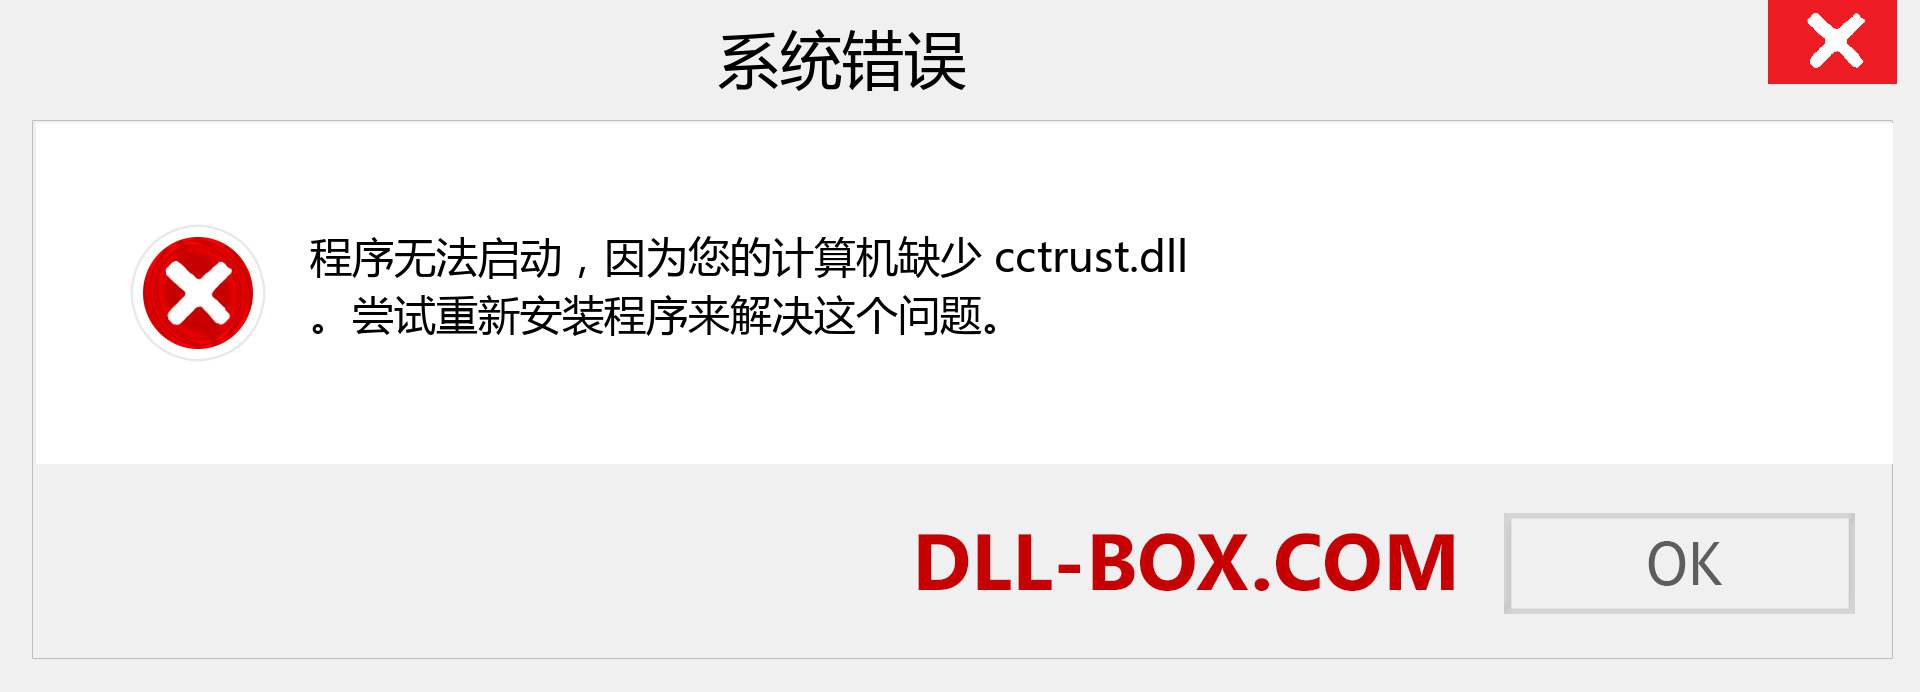 cctrust.dll 文件丢失？。 适用于 Windows 7、8、10 的下载 - 修复 Windows、照片、图像上的 cctrust dll 丢失错误